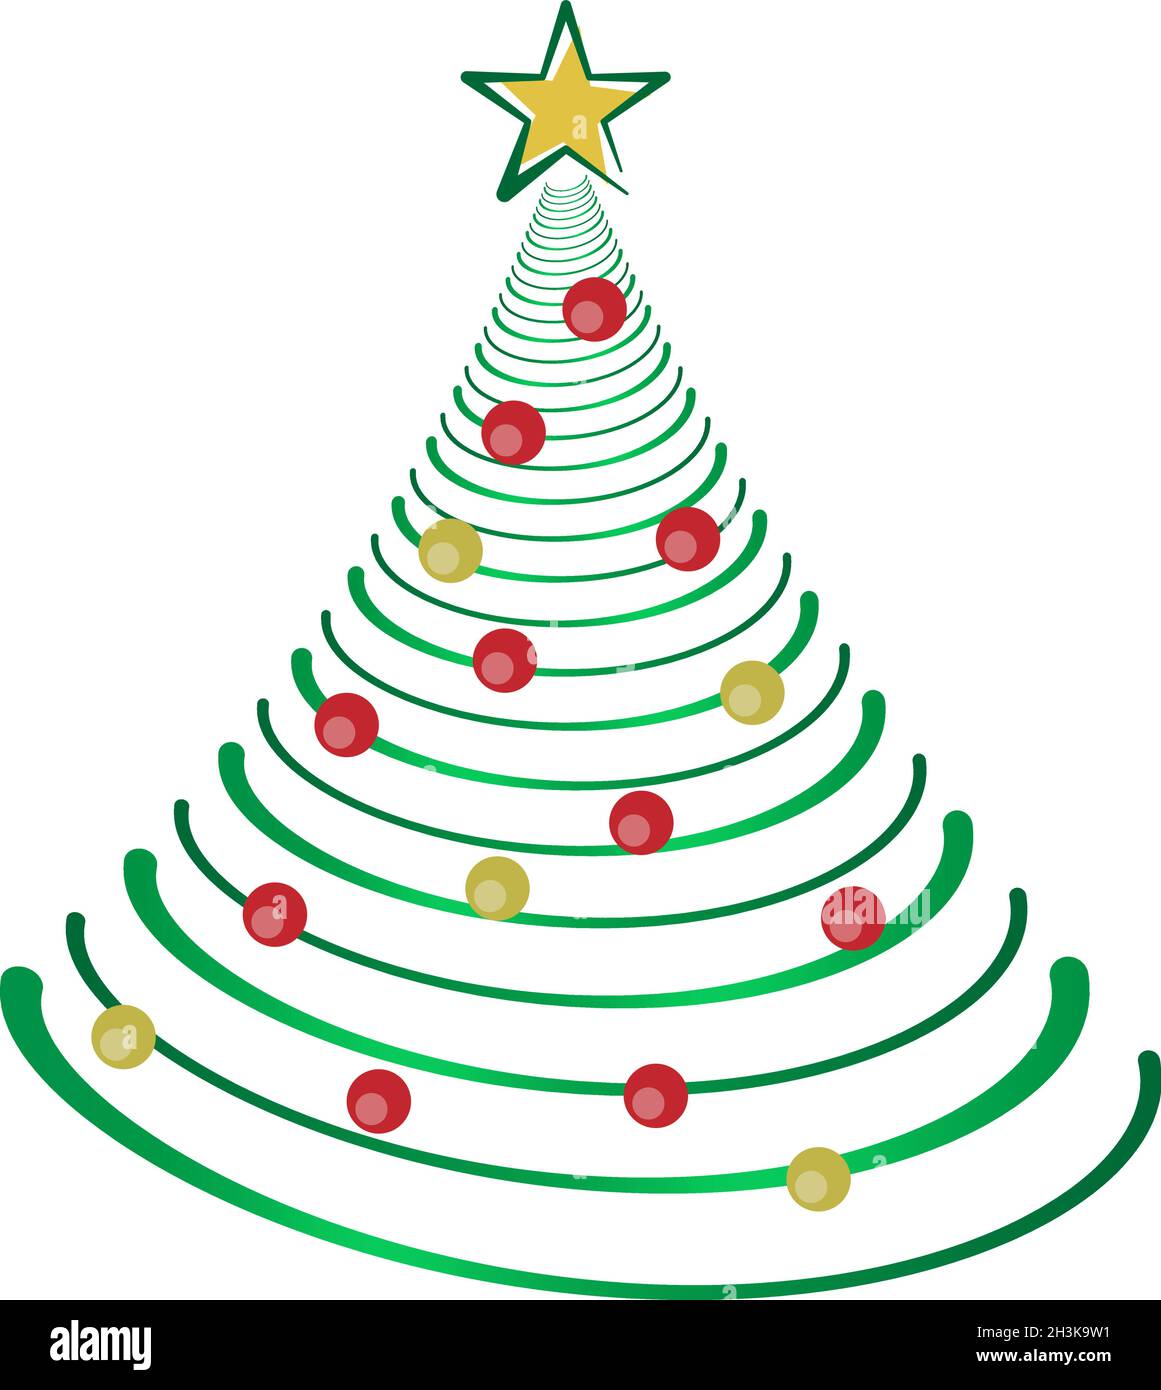 Weihnachtsbaum-Illustration mit roten und goldenen Weihnachtskugeln Stock Vektor